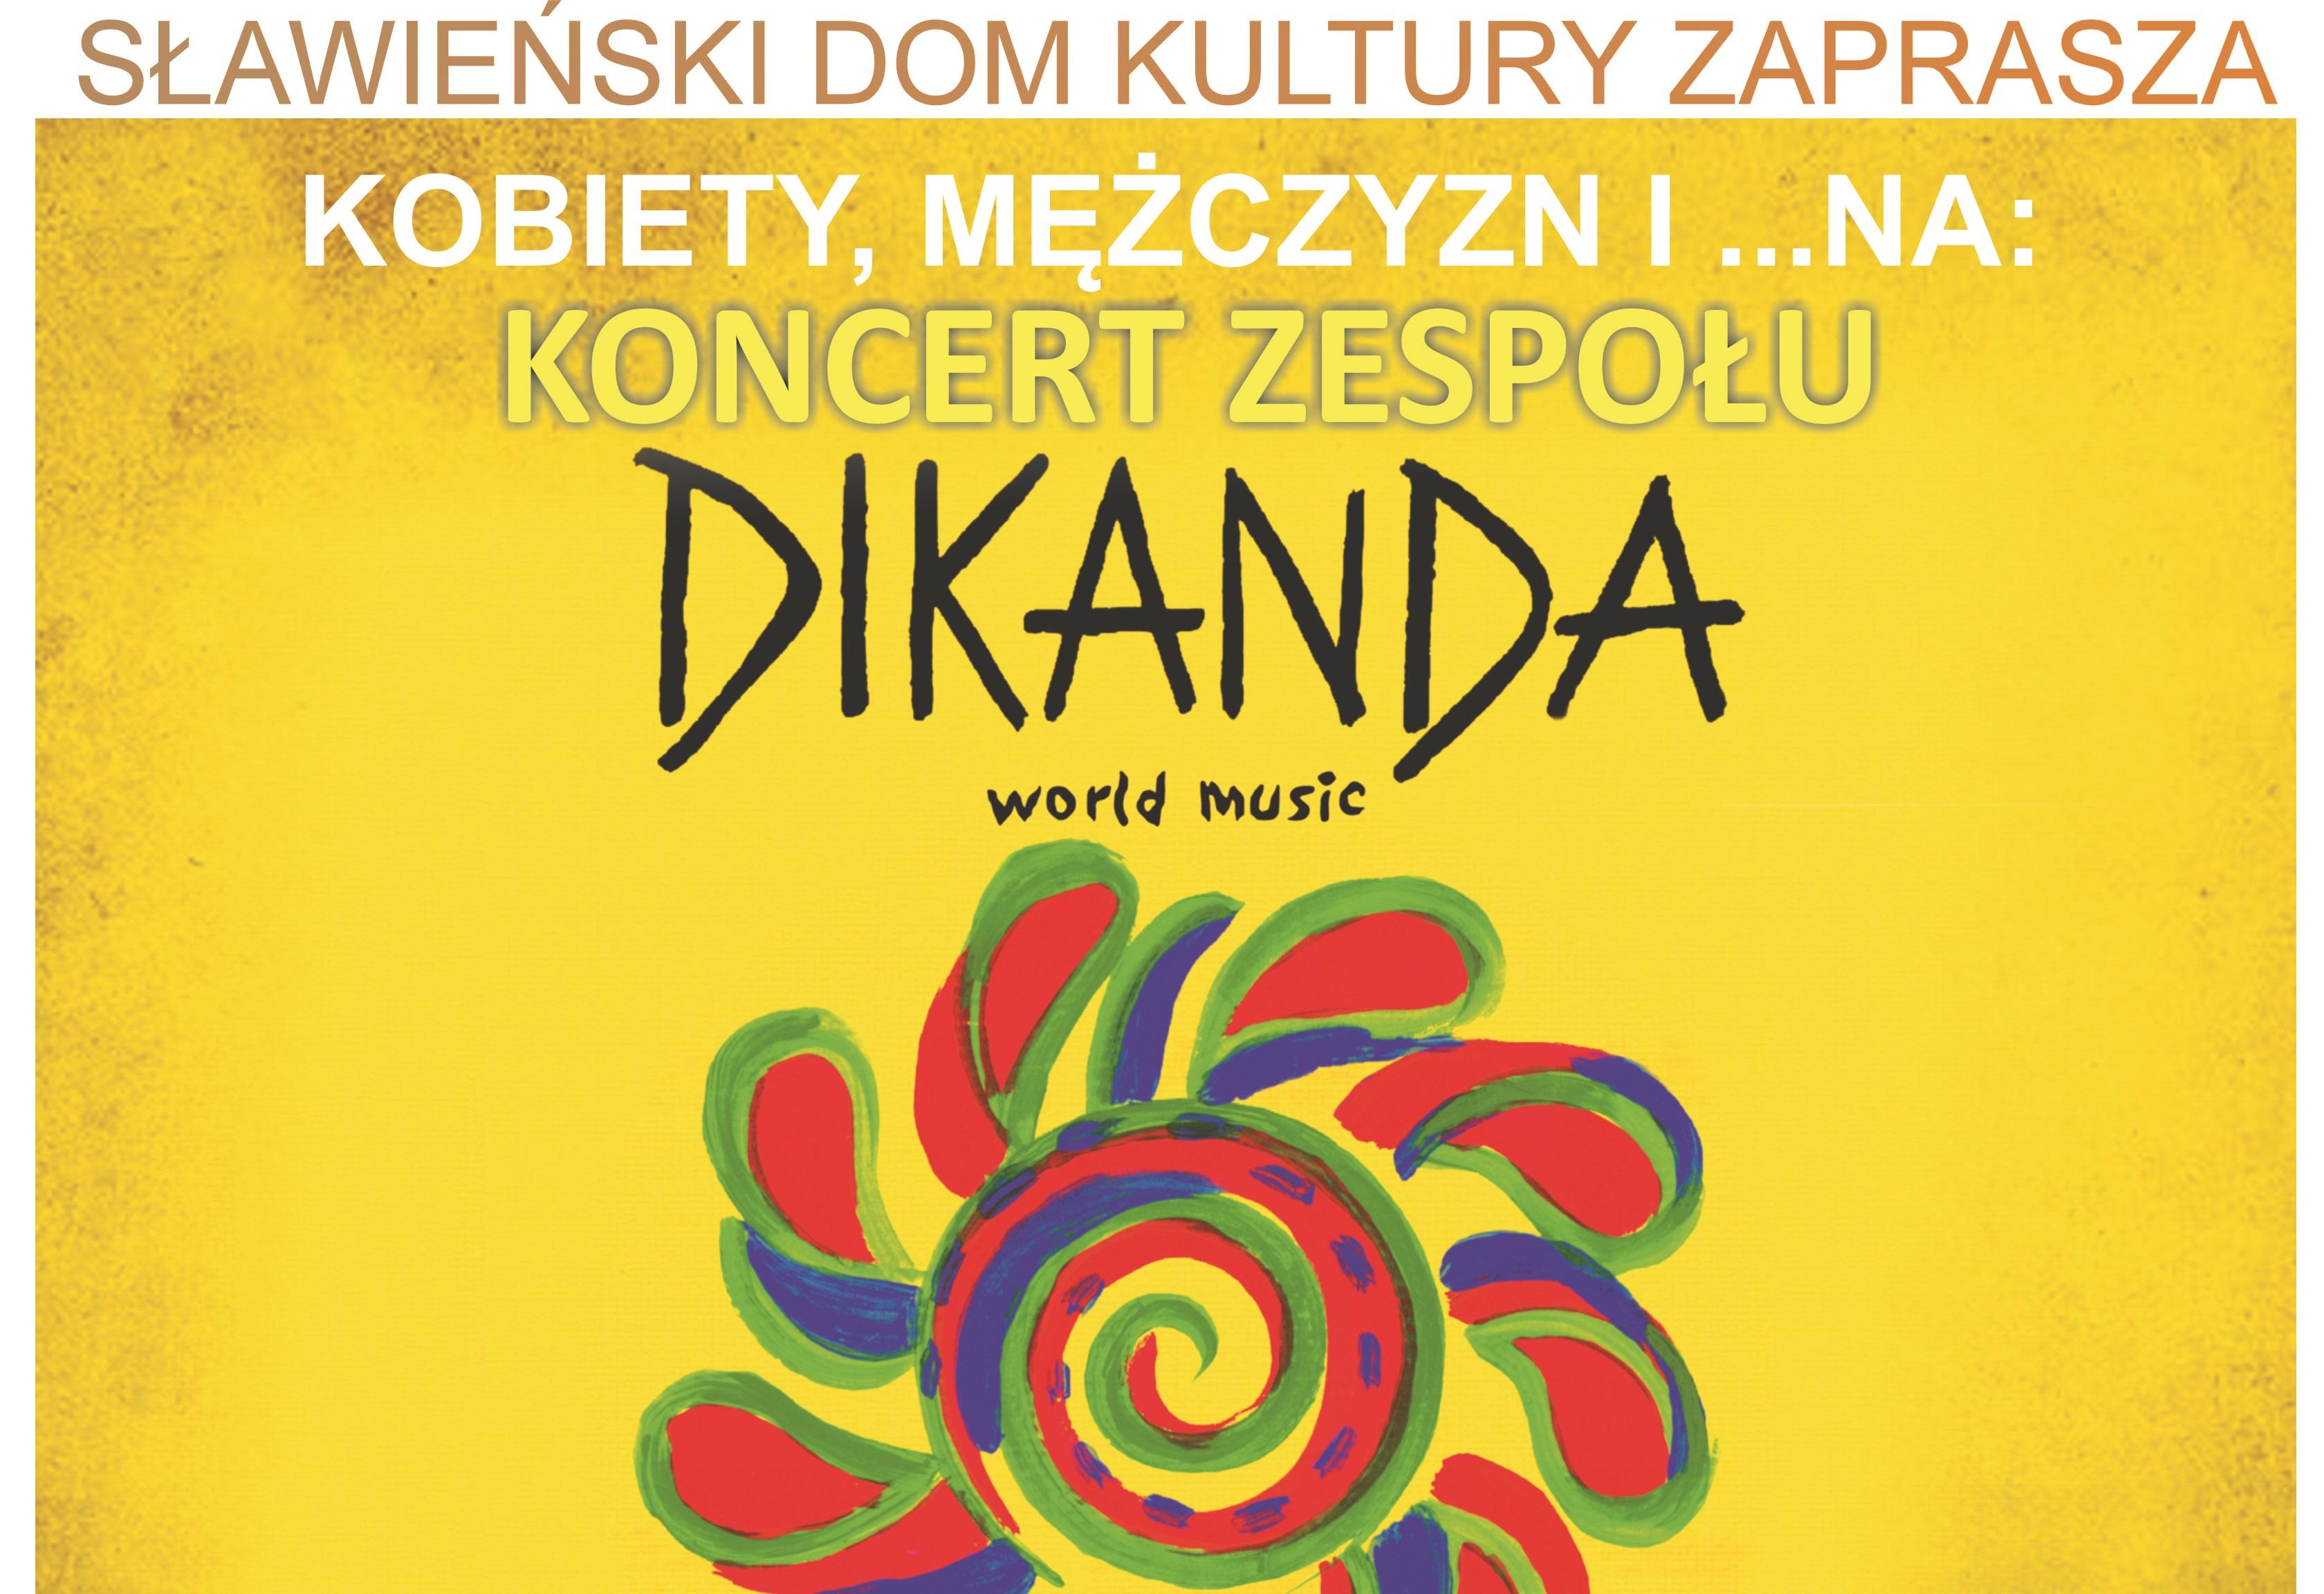 Koncert zespołu DIKANDA w Sławieńskim Domu Kultury